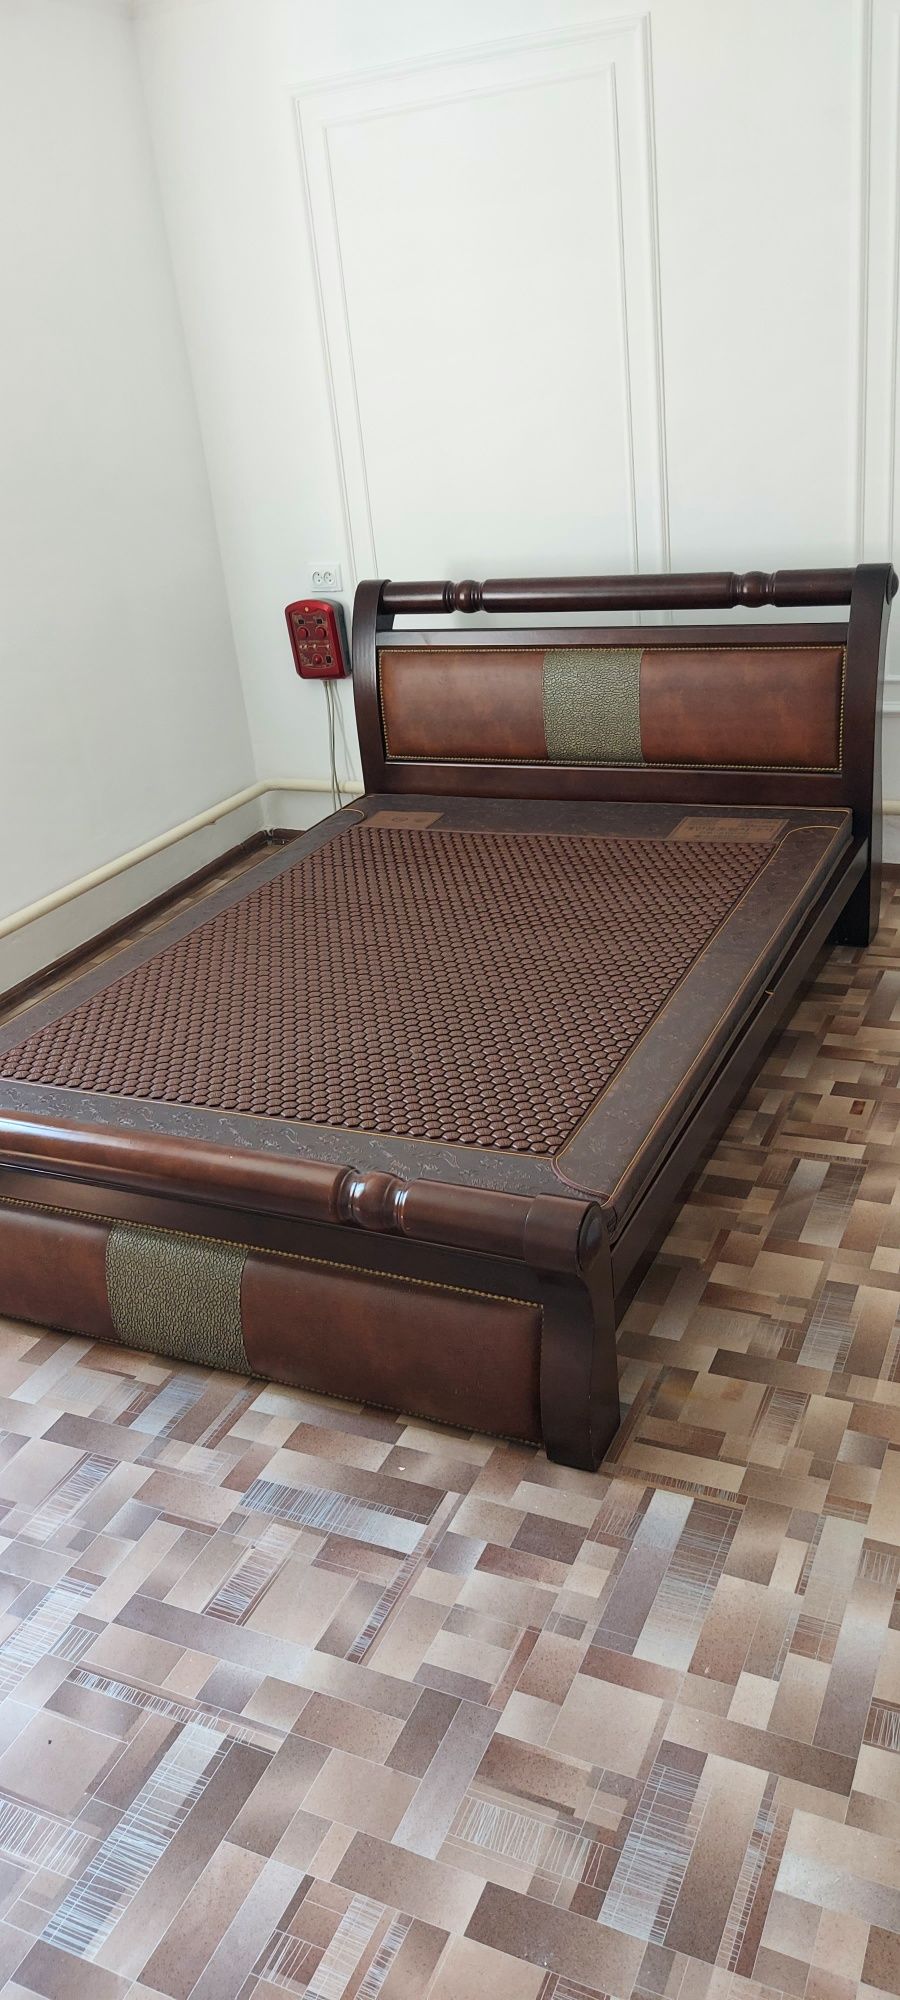 Кровать с матрасом турмалин. Ханбит нана технологий. С подогревом.